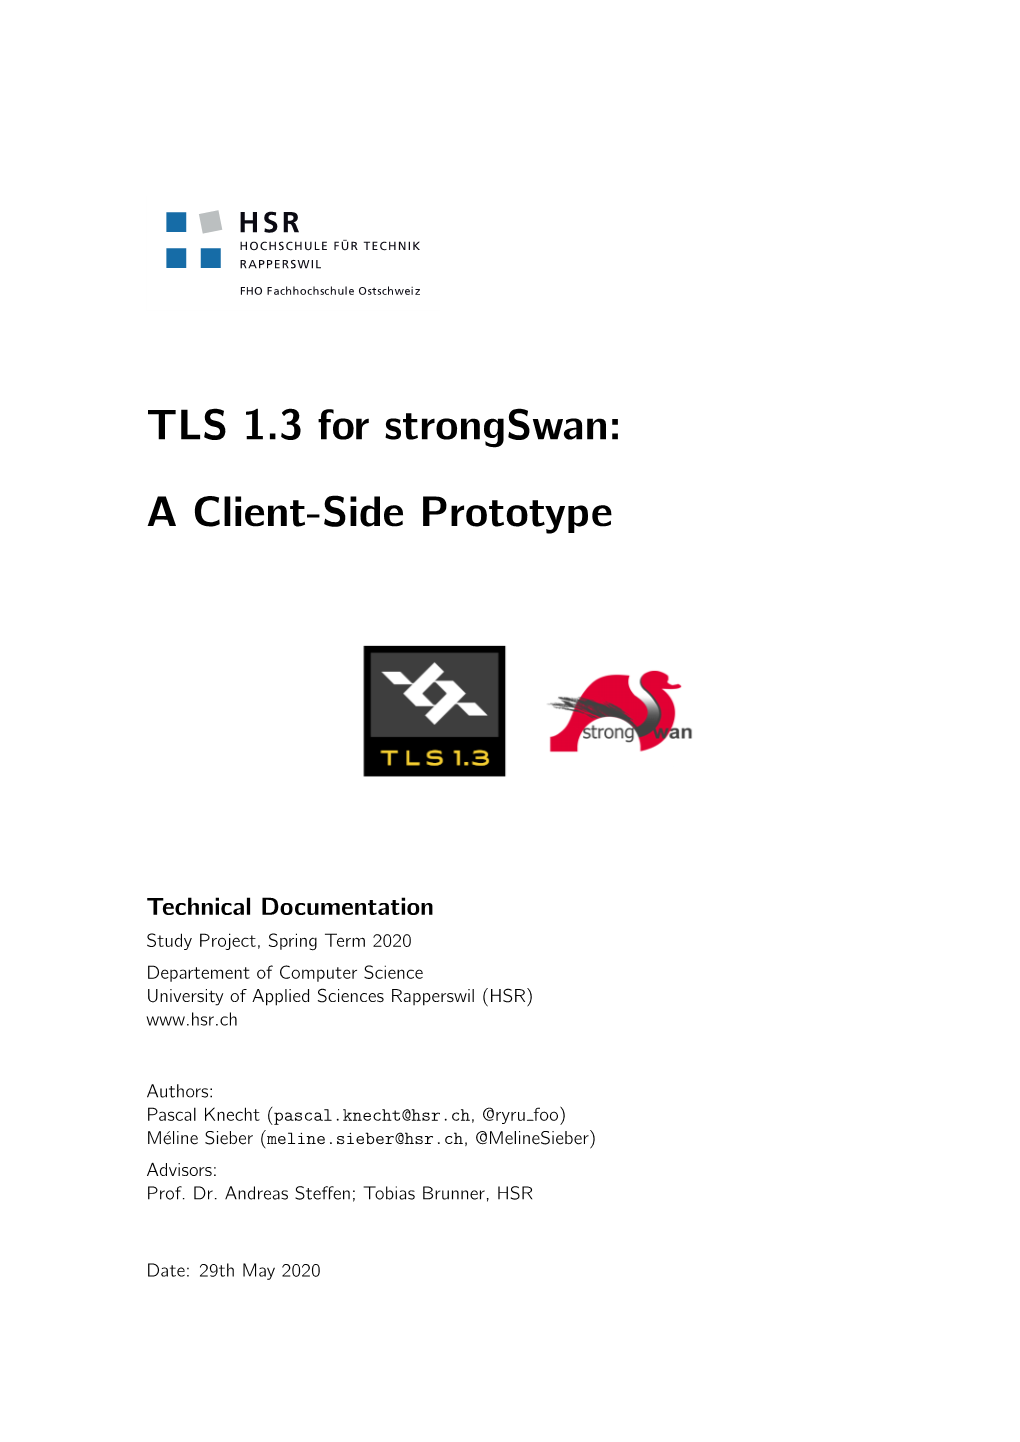 TLS 1.3 for Strongswan